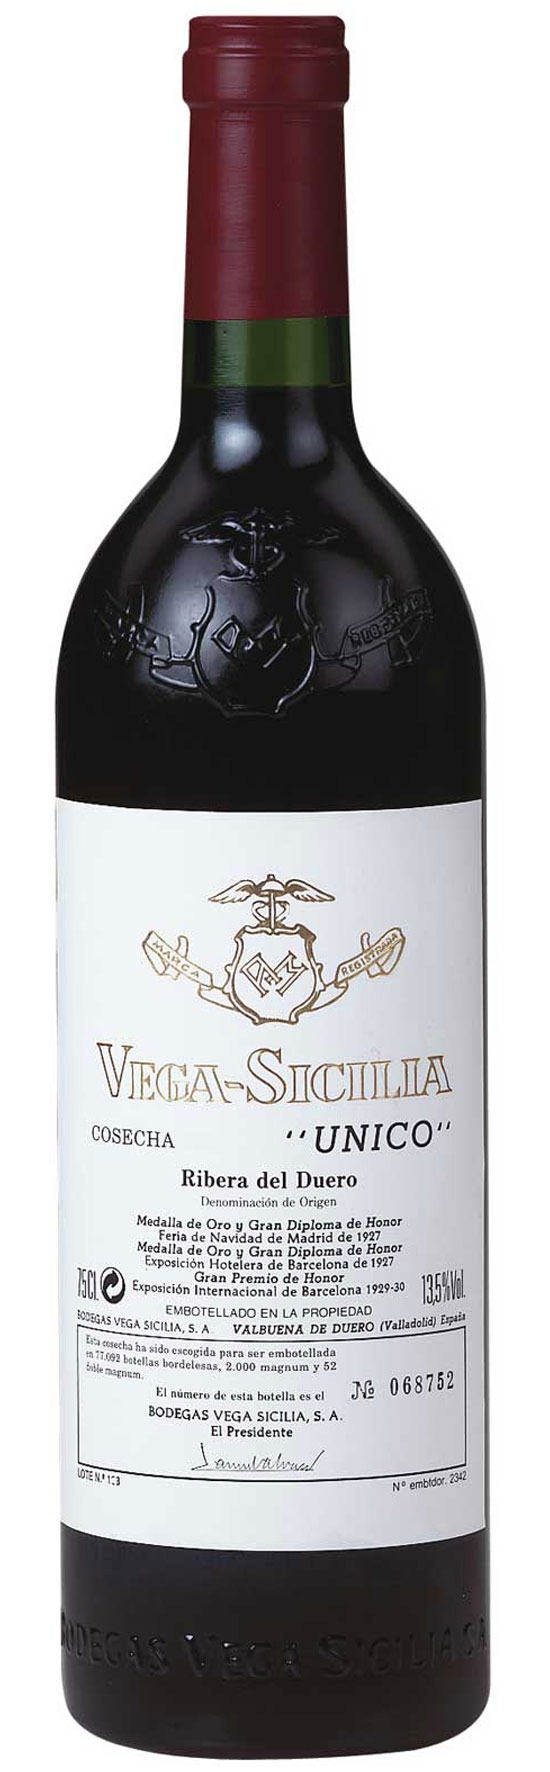 Vega Sicilia Unico 2006